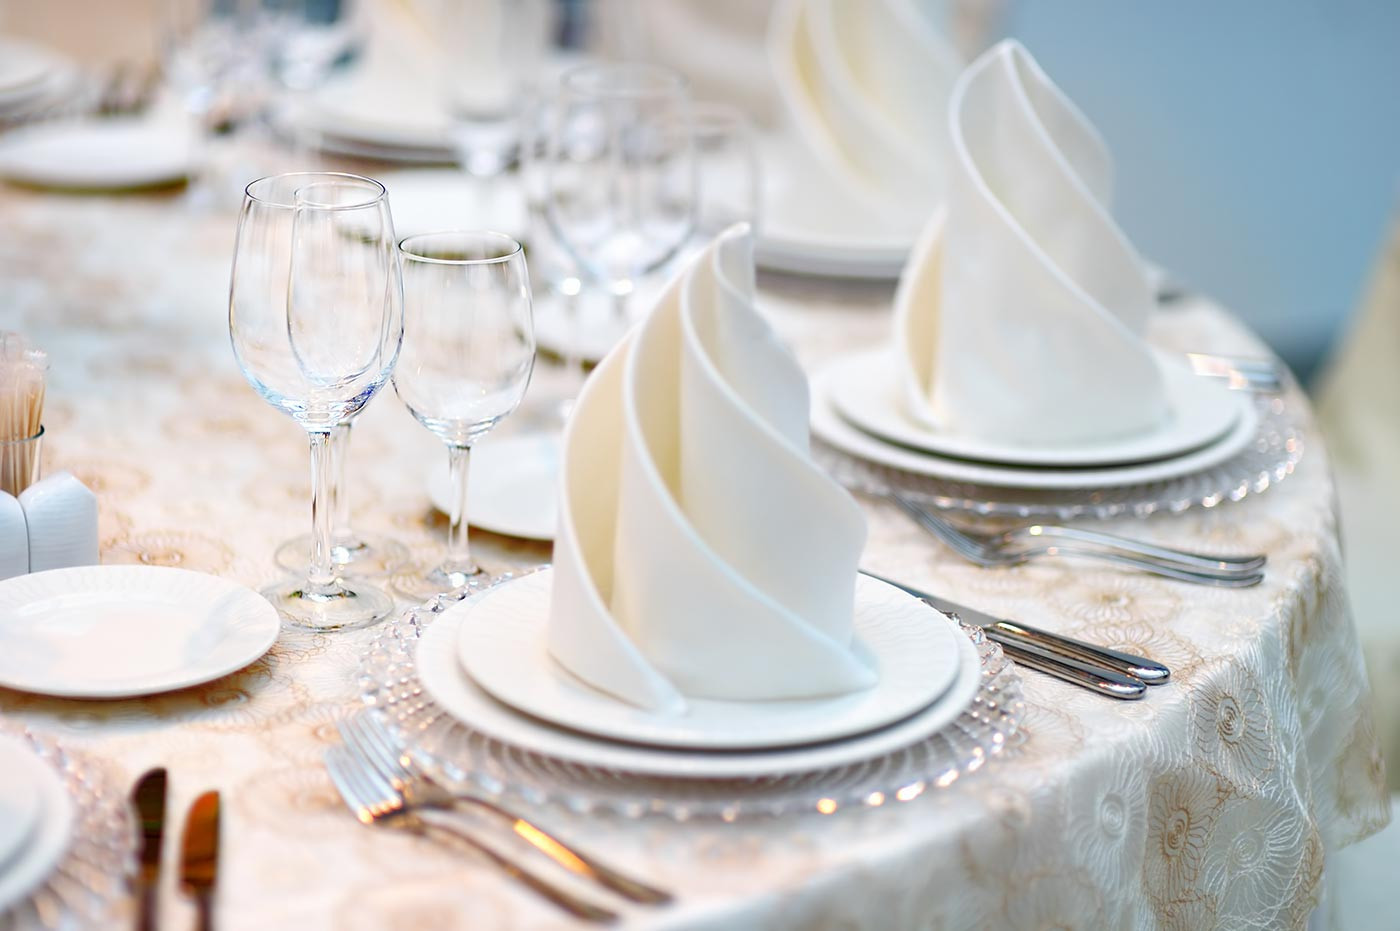 Hochzeit Servietten
 Servietten falten für Hochzeit – Top 10 Ideen Tipps